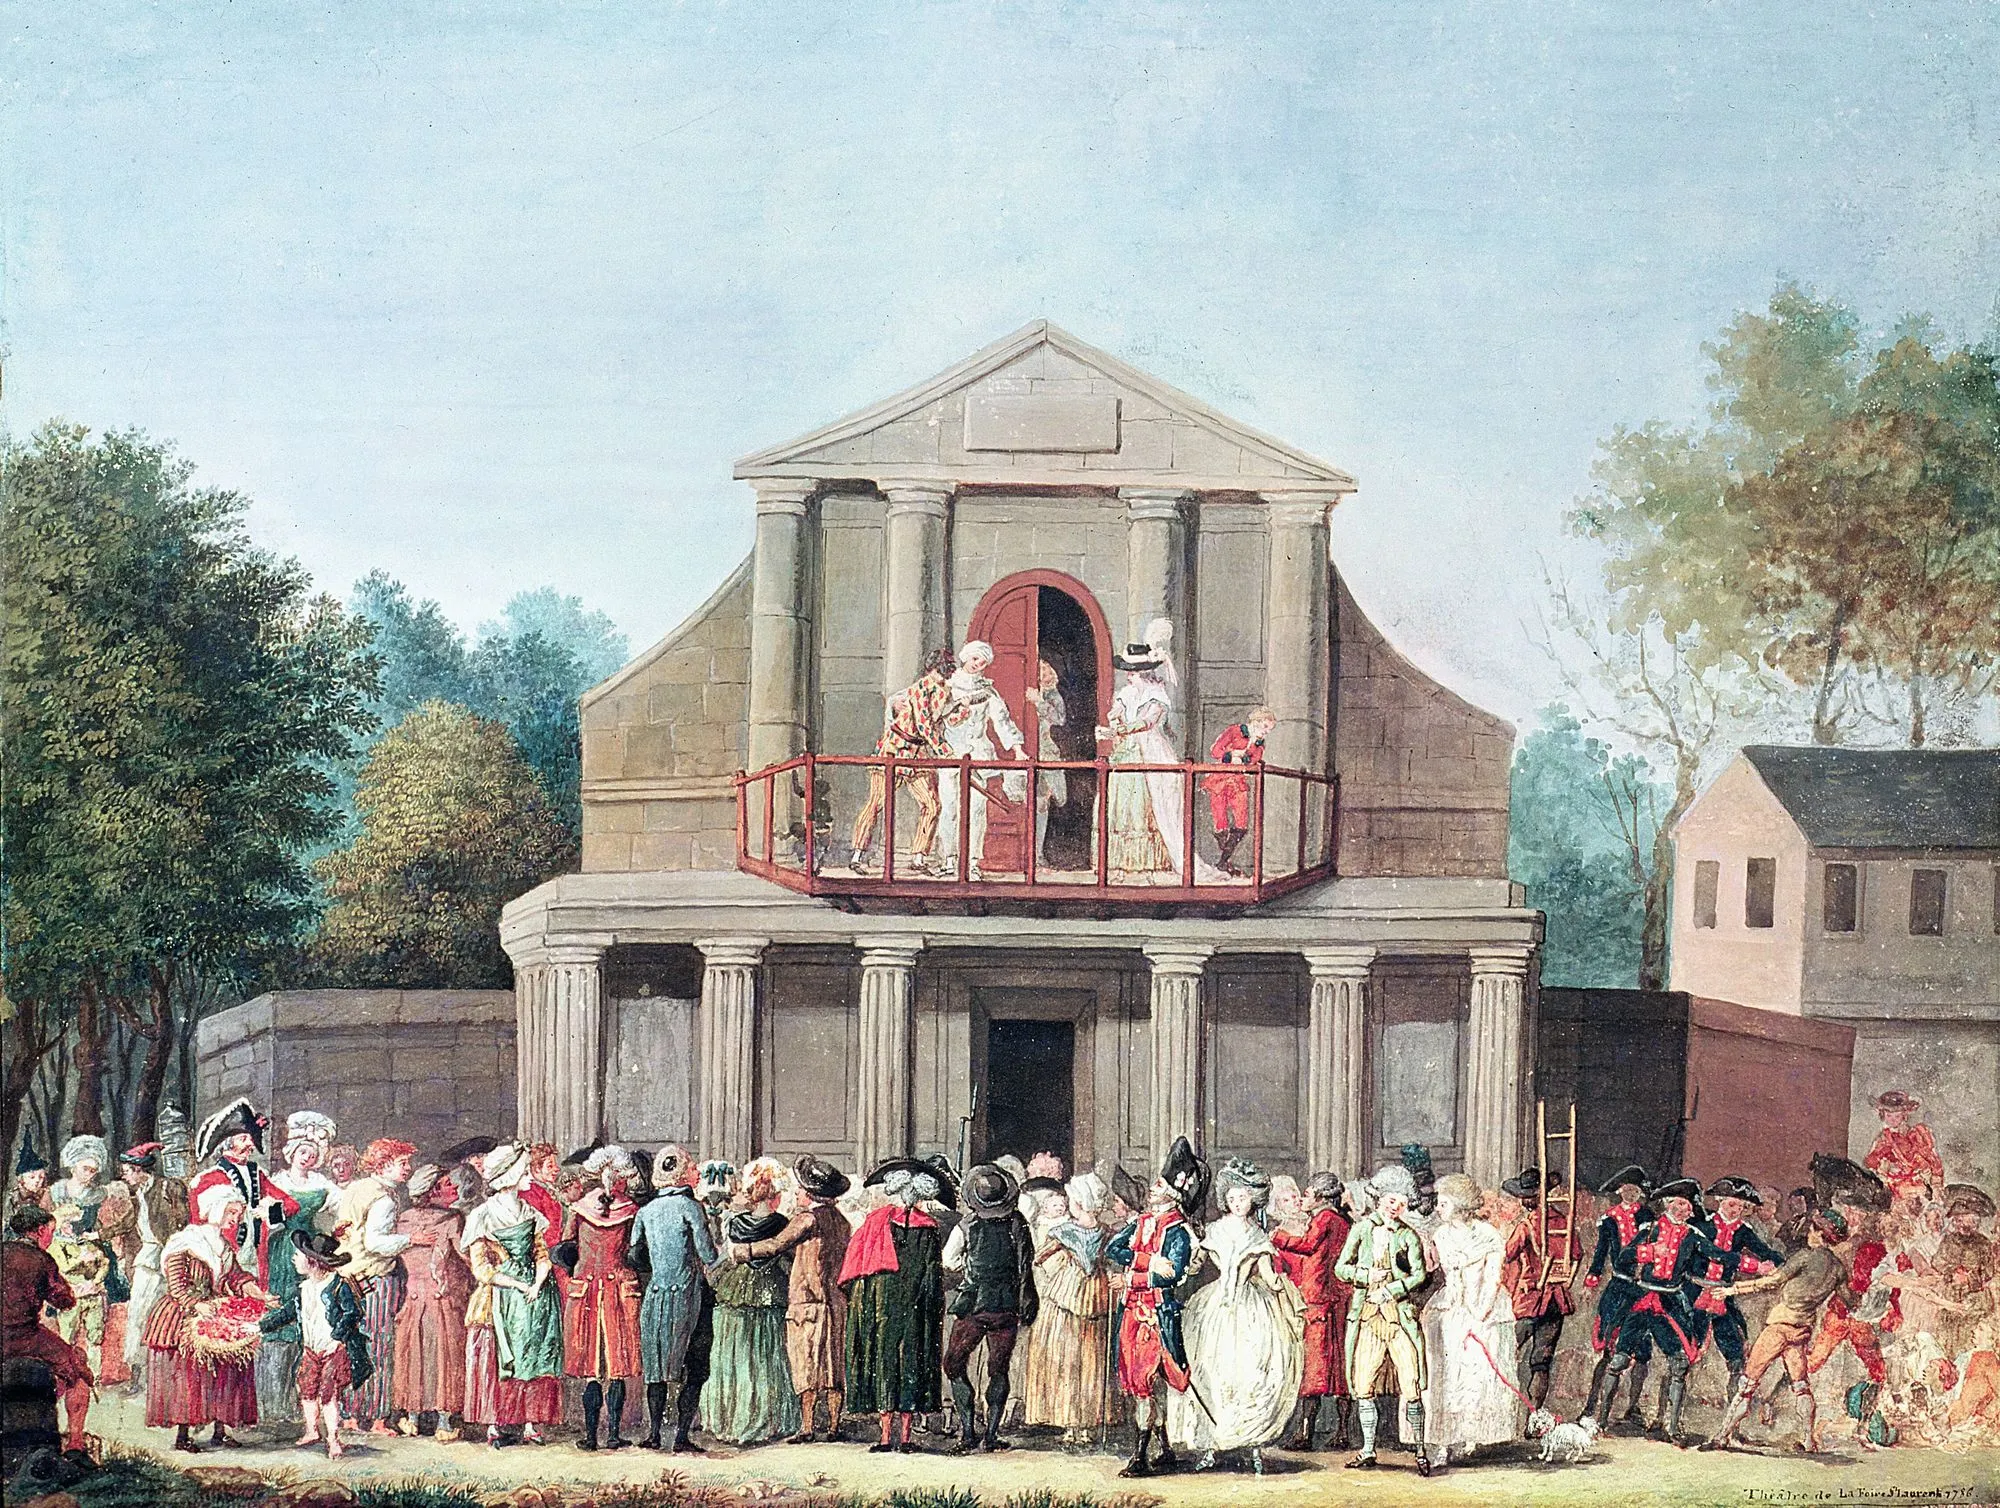 Anonyme, Théâtre à la foire Saint-Laurent,
1786, aquarelle, musée Carnavalet, Paris.